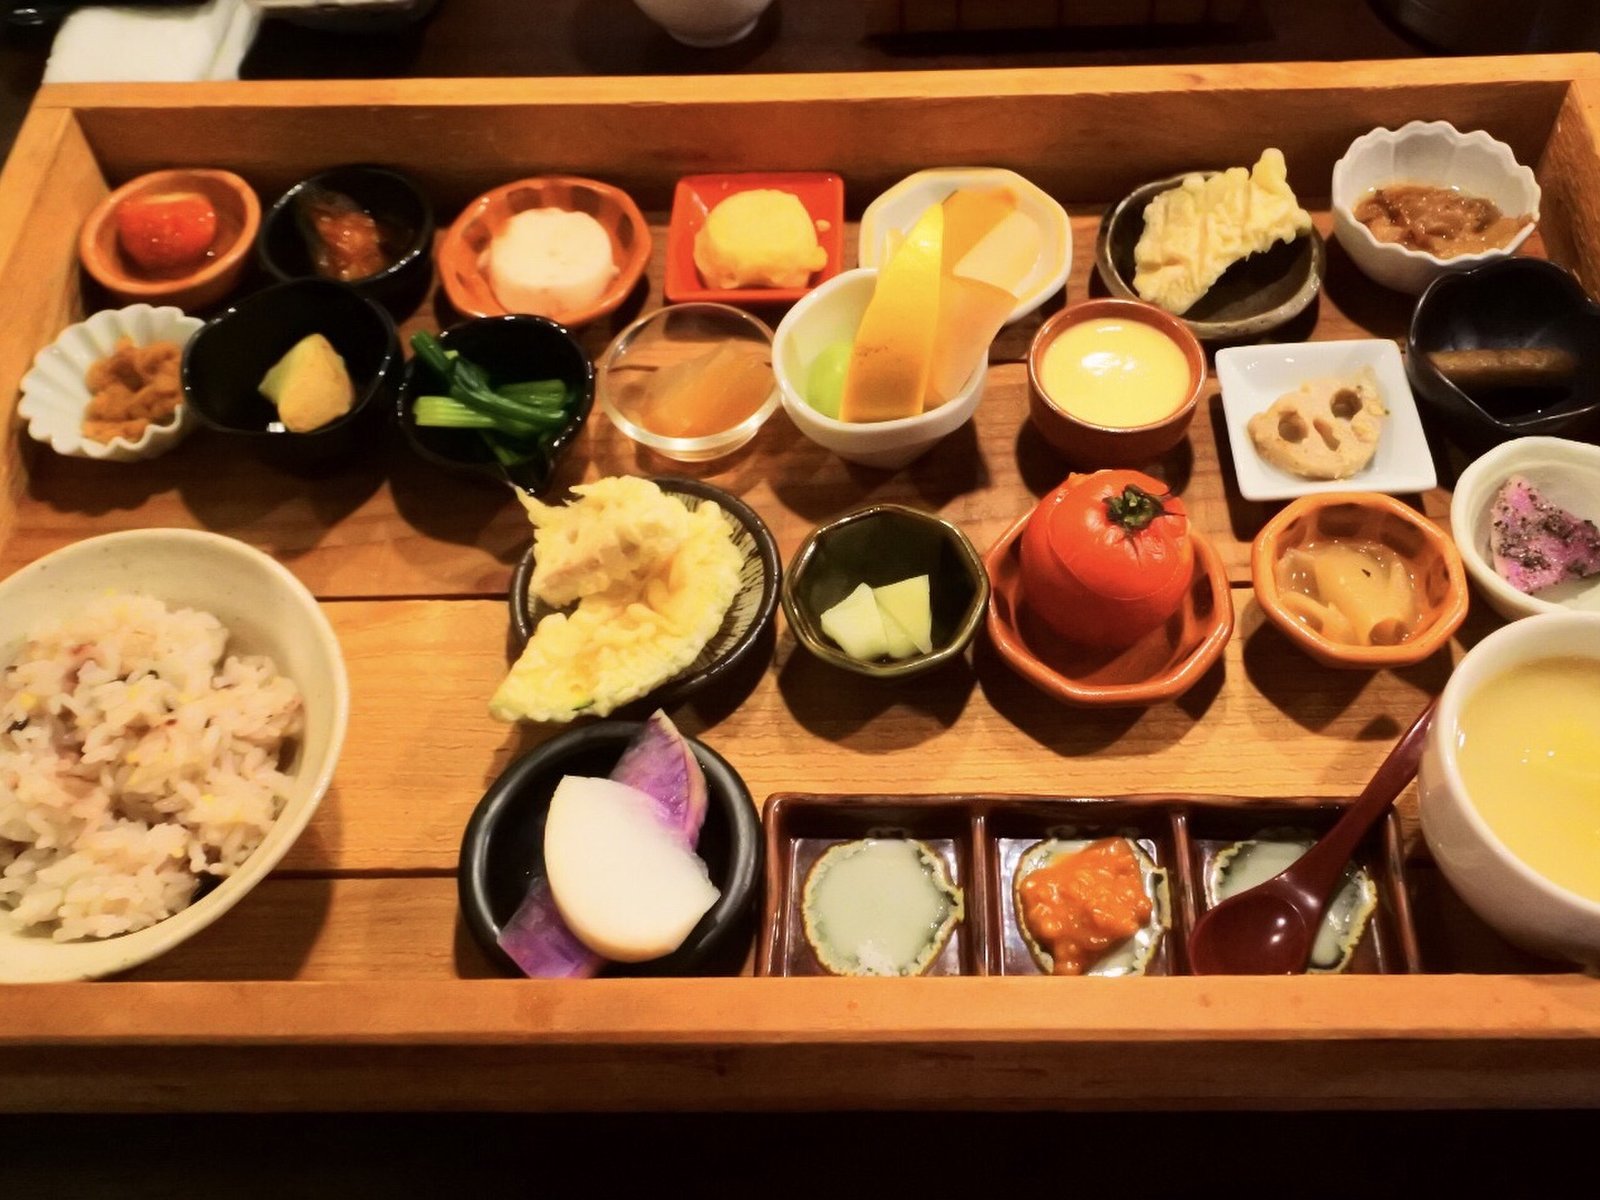 神戸三宮のおすすめ和食ランチ 1日25食限定 木箱に入ったおしゃれな小鉢ランチが今人気 Playlife プレイライフ